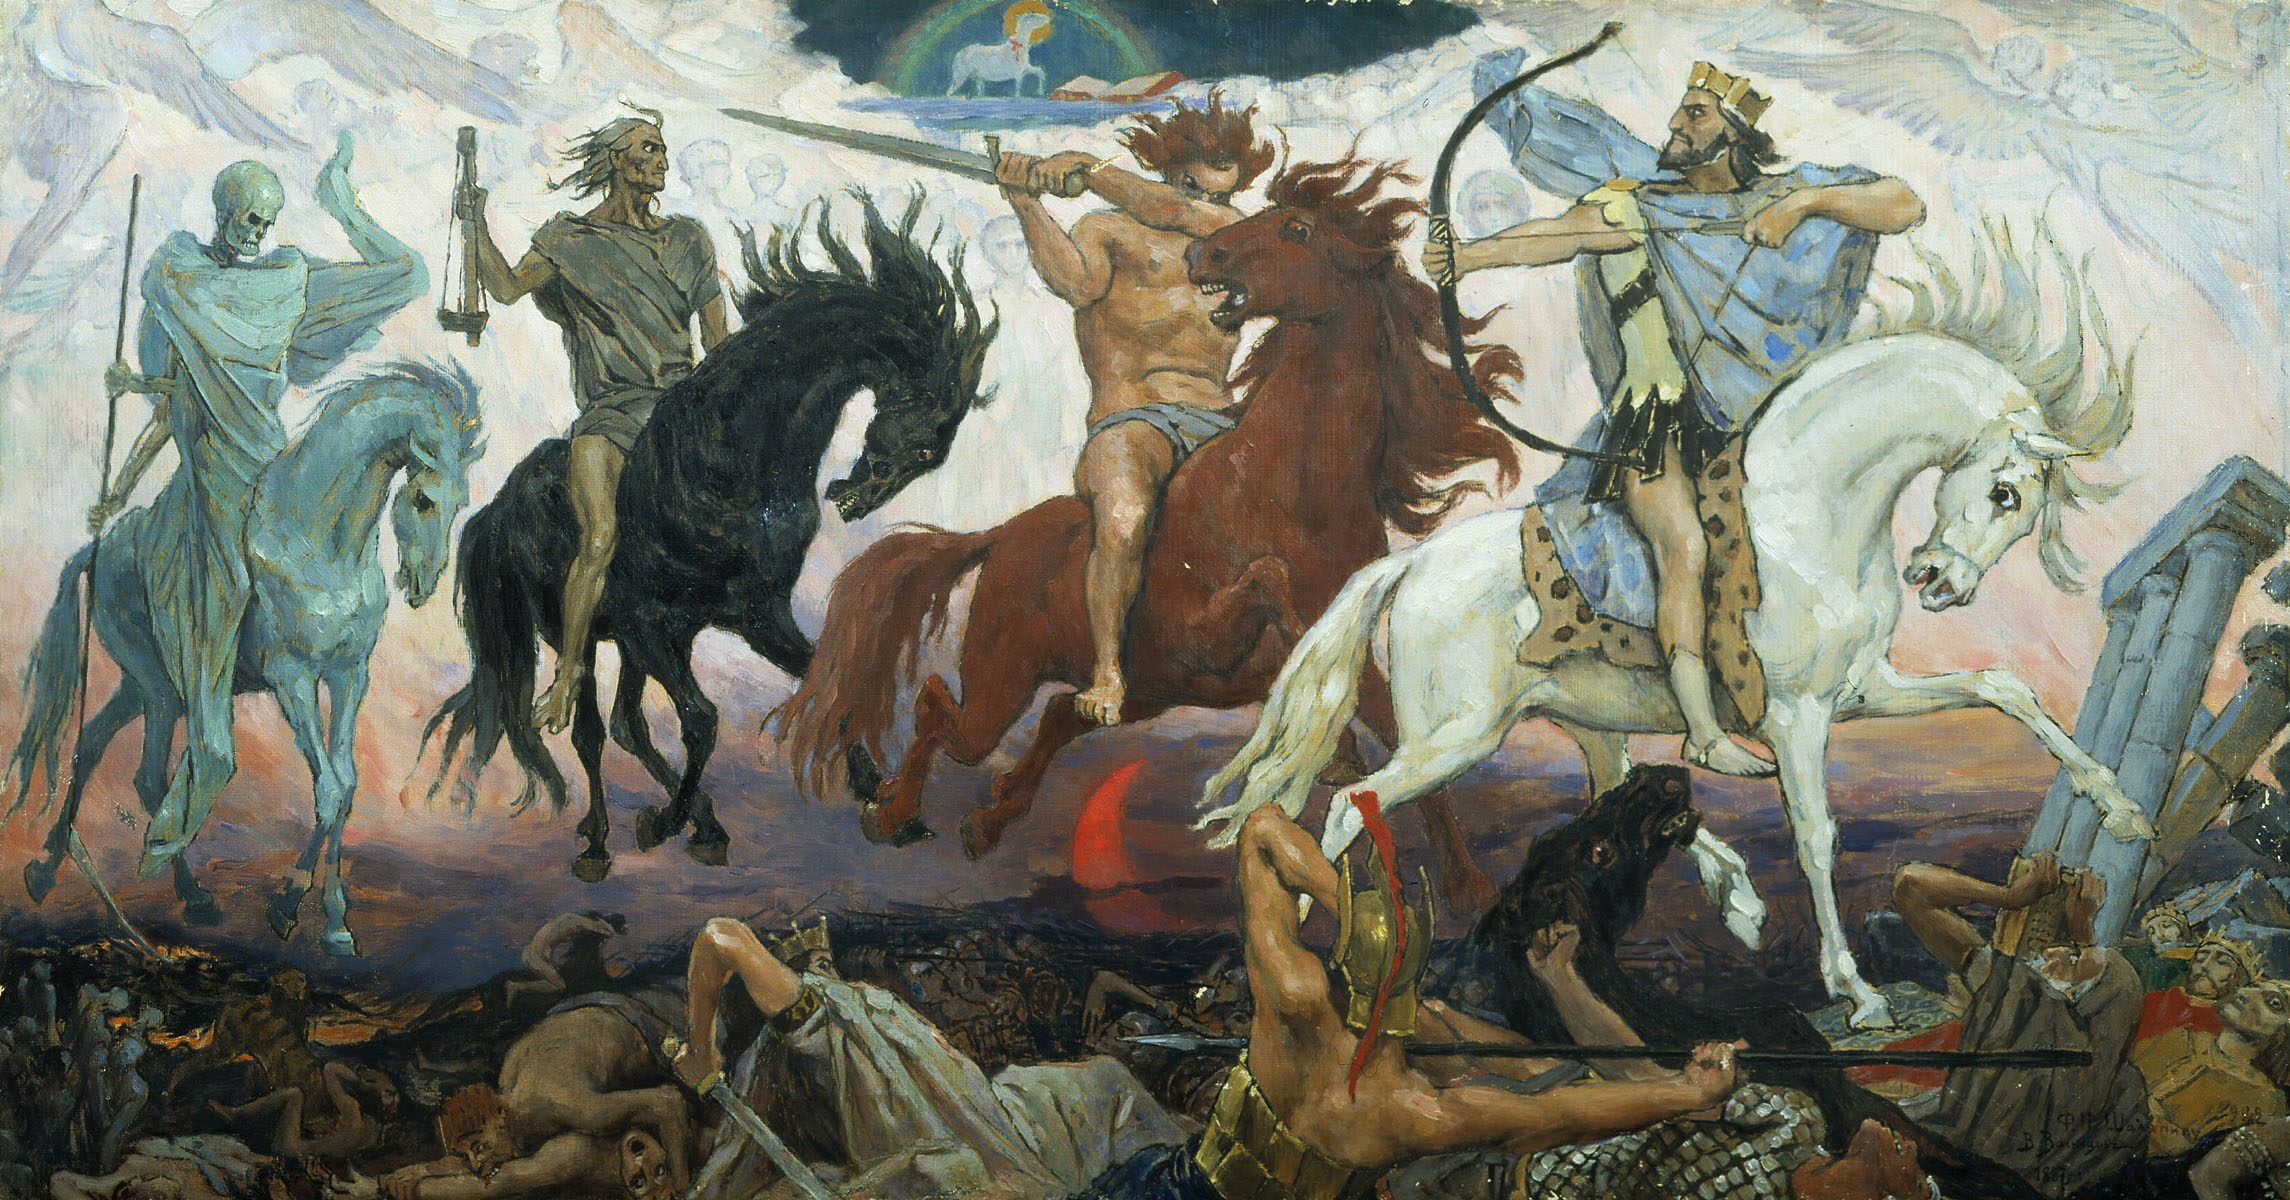 ''Four Horsemen of Apocalypse'', by Viktor Vasnetsov. Painted in 1887.